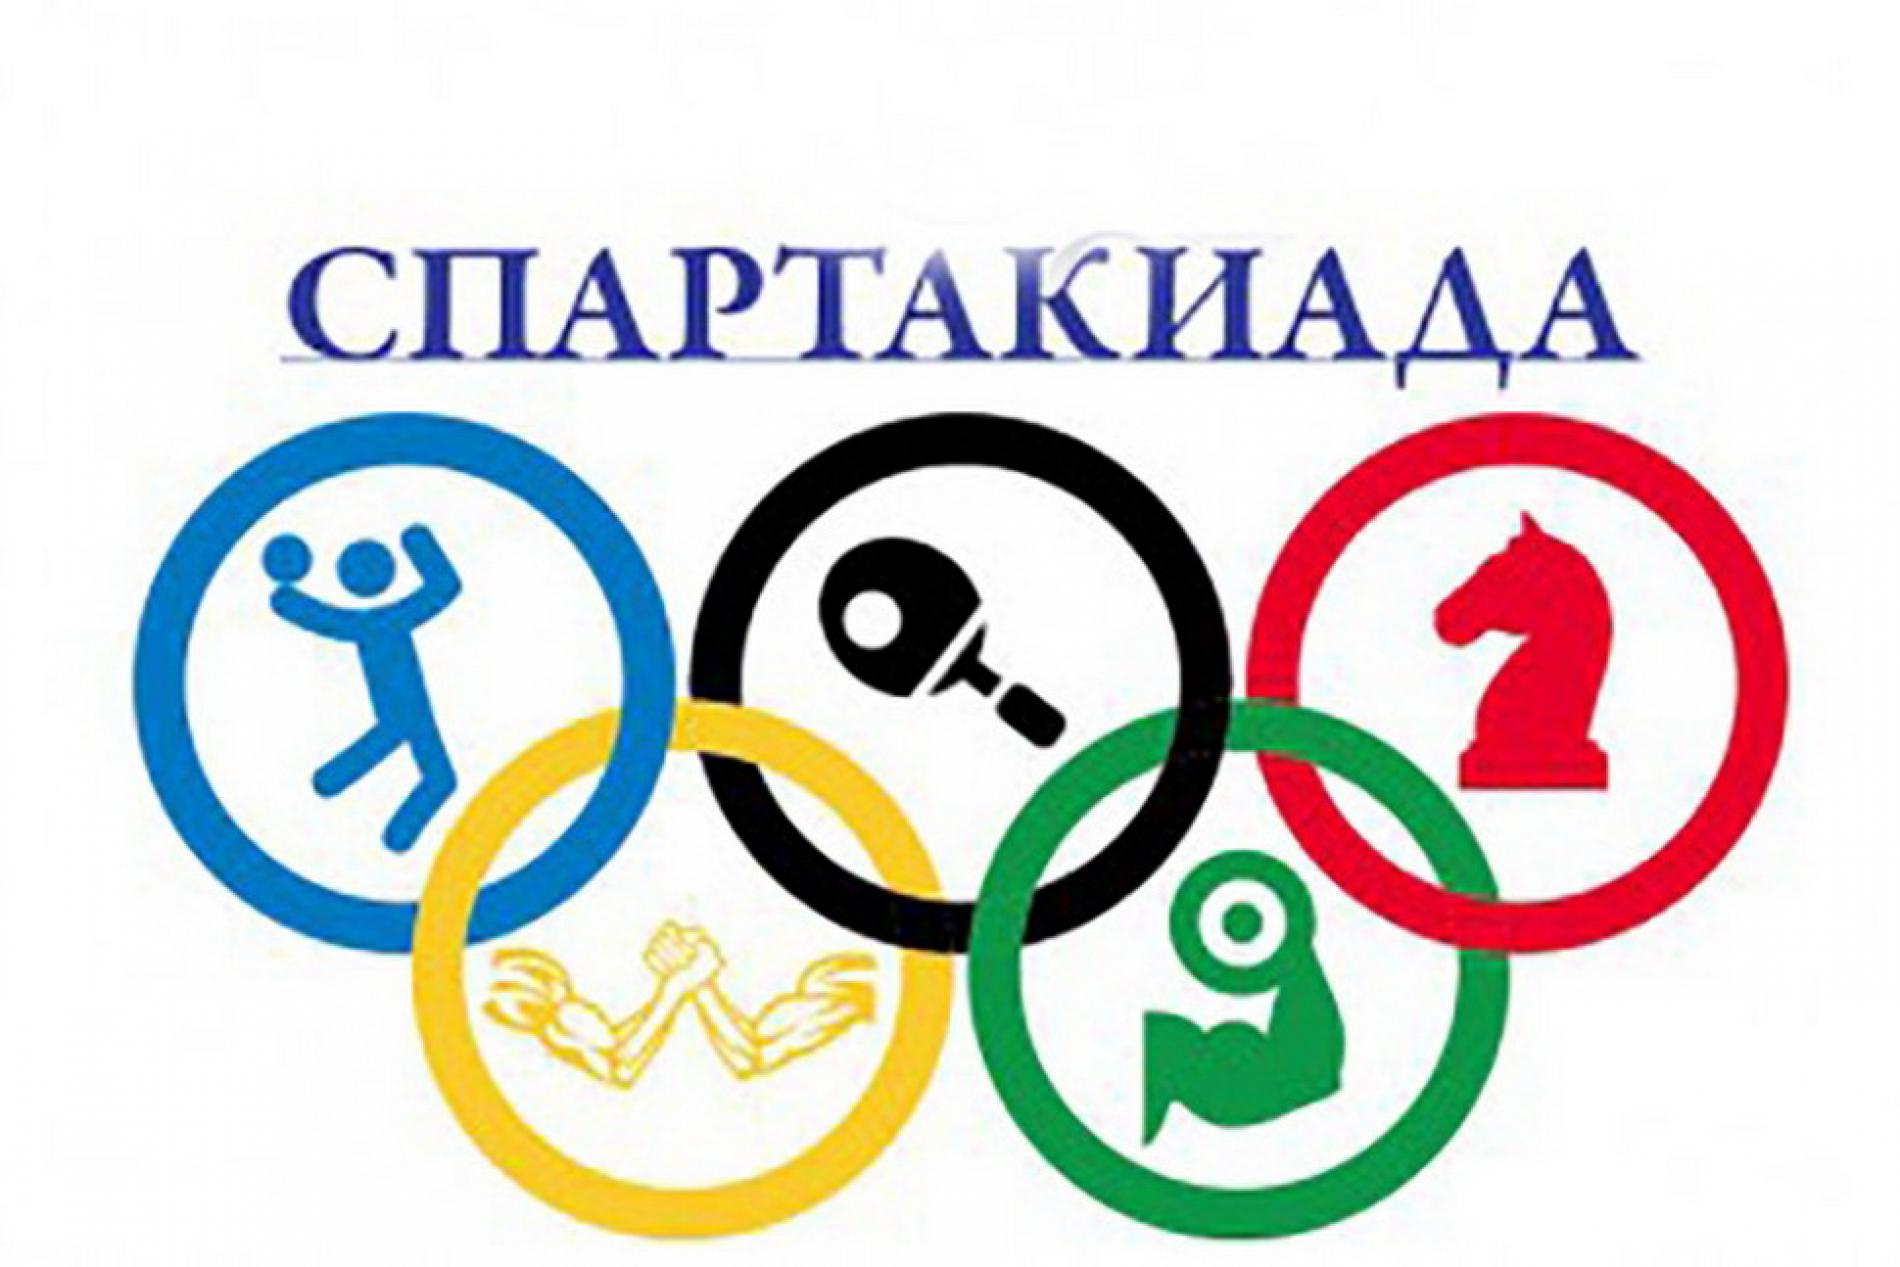 Малые Олимпийские игры.